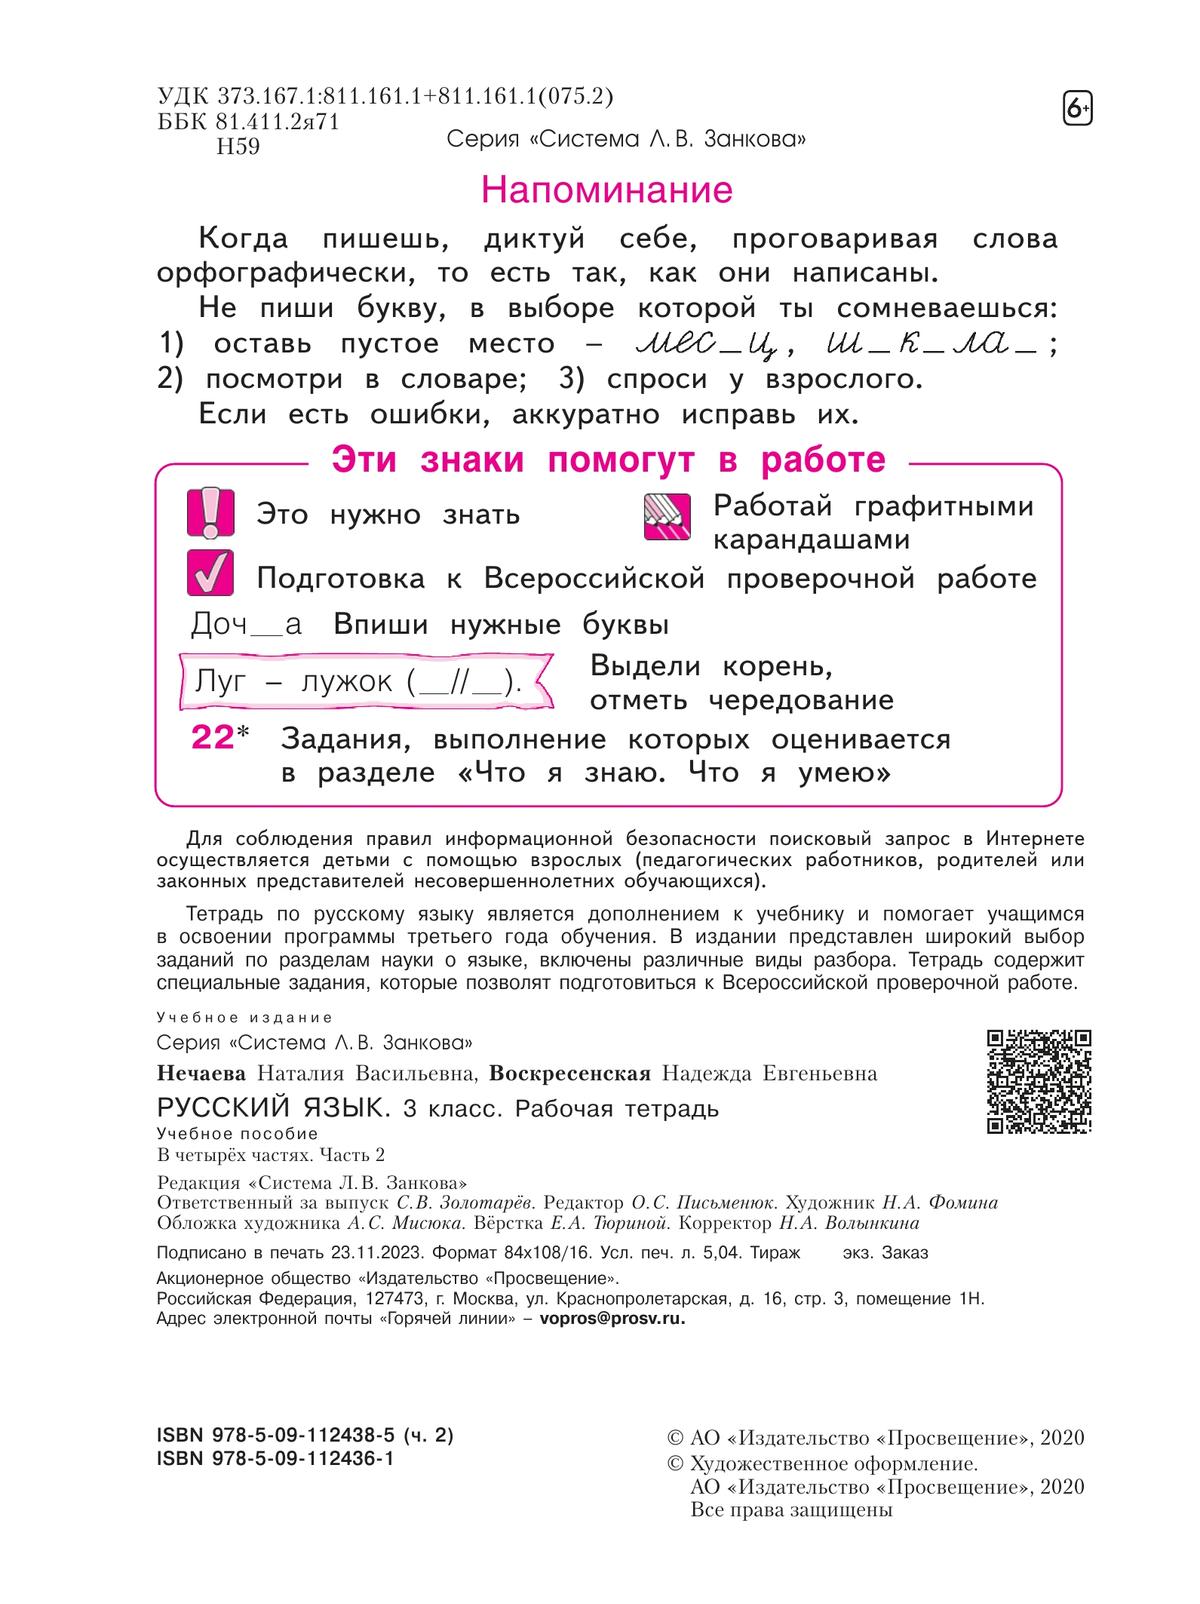 Русский язык. Рабочая тетрадь. 3 класс. В 4-х частях. Часть 2 6